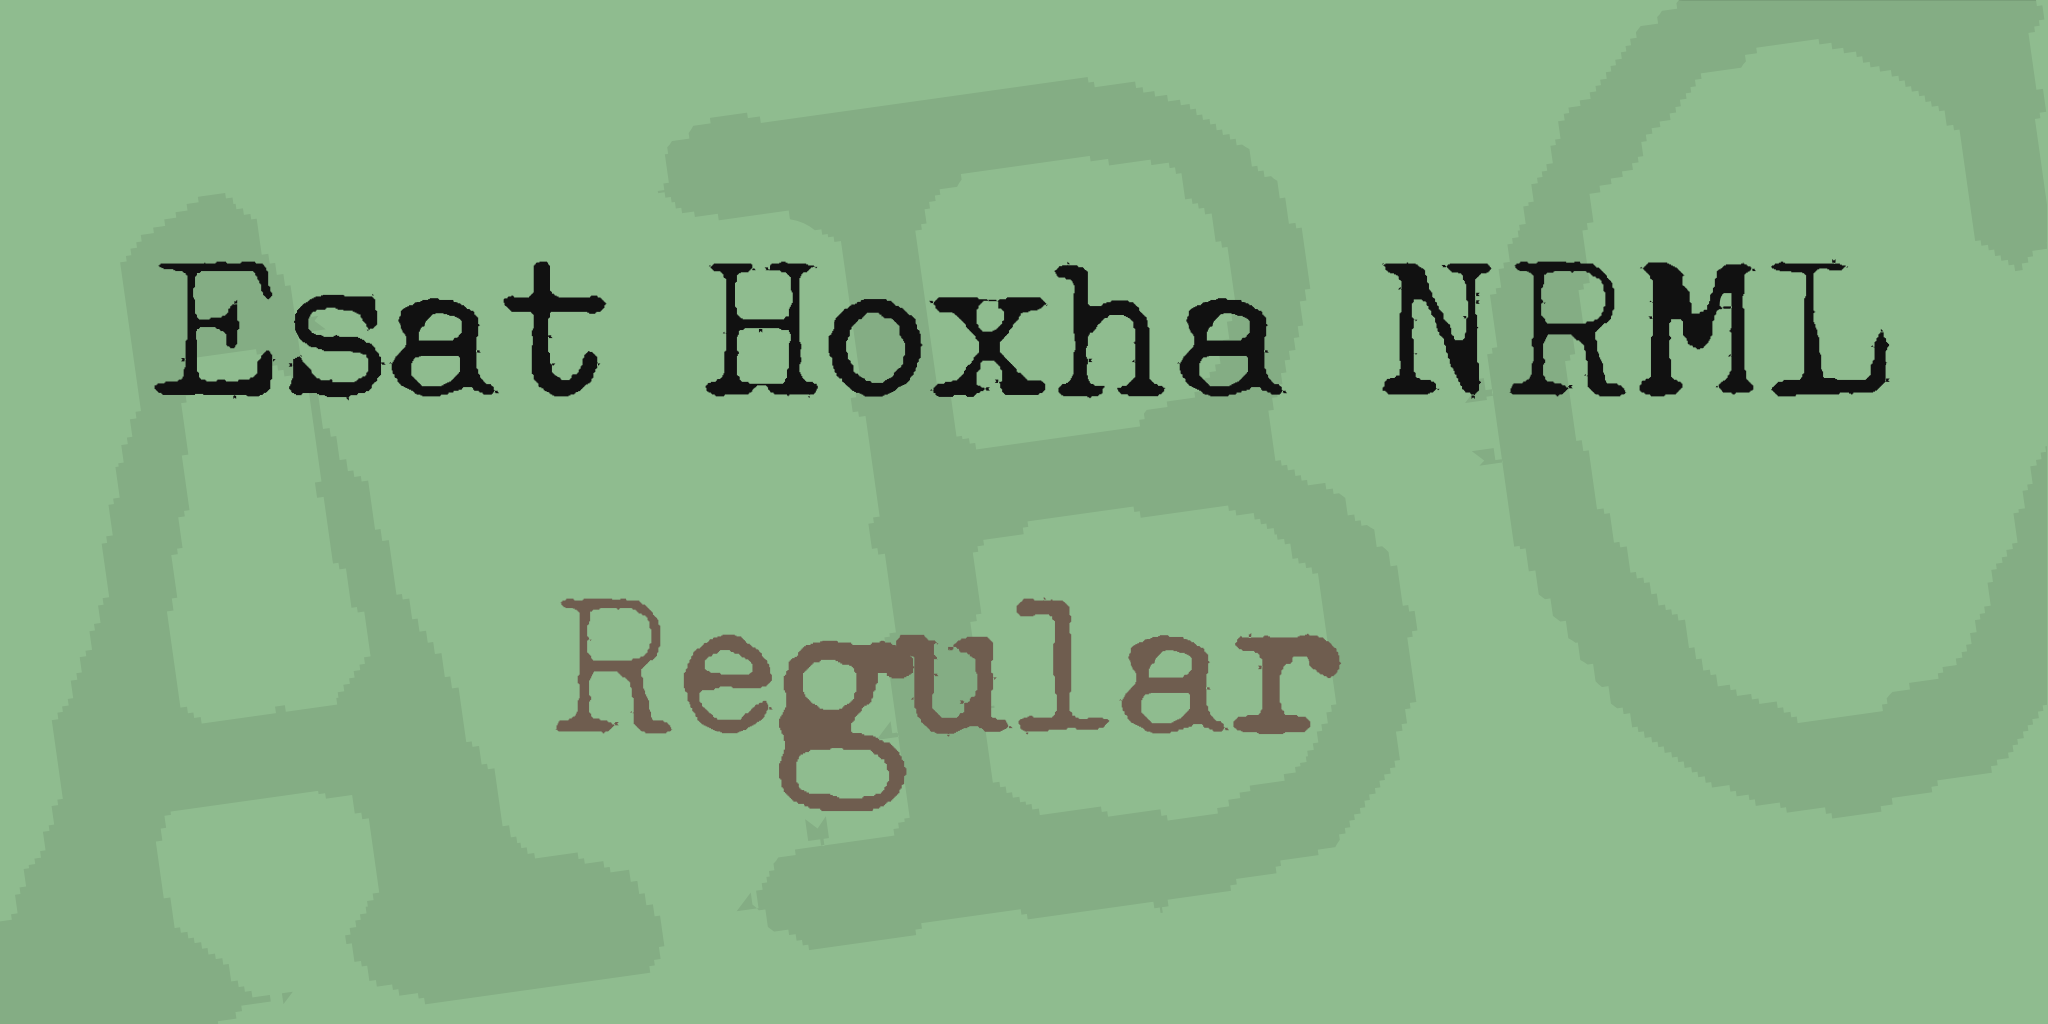 Esat Hoxha Nrml